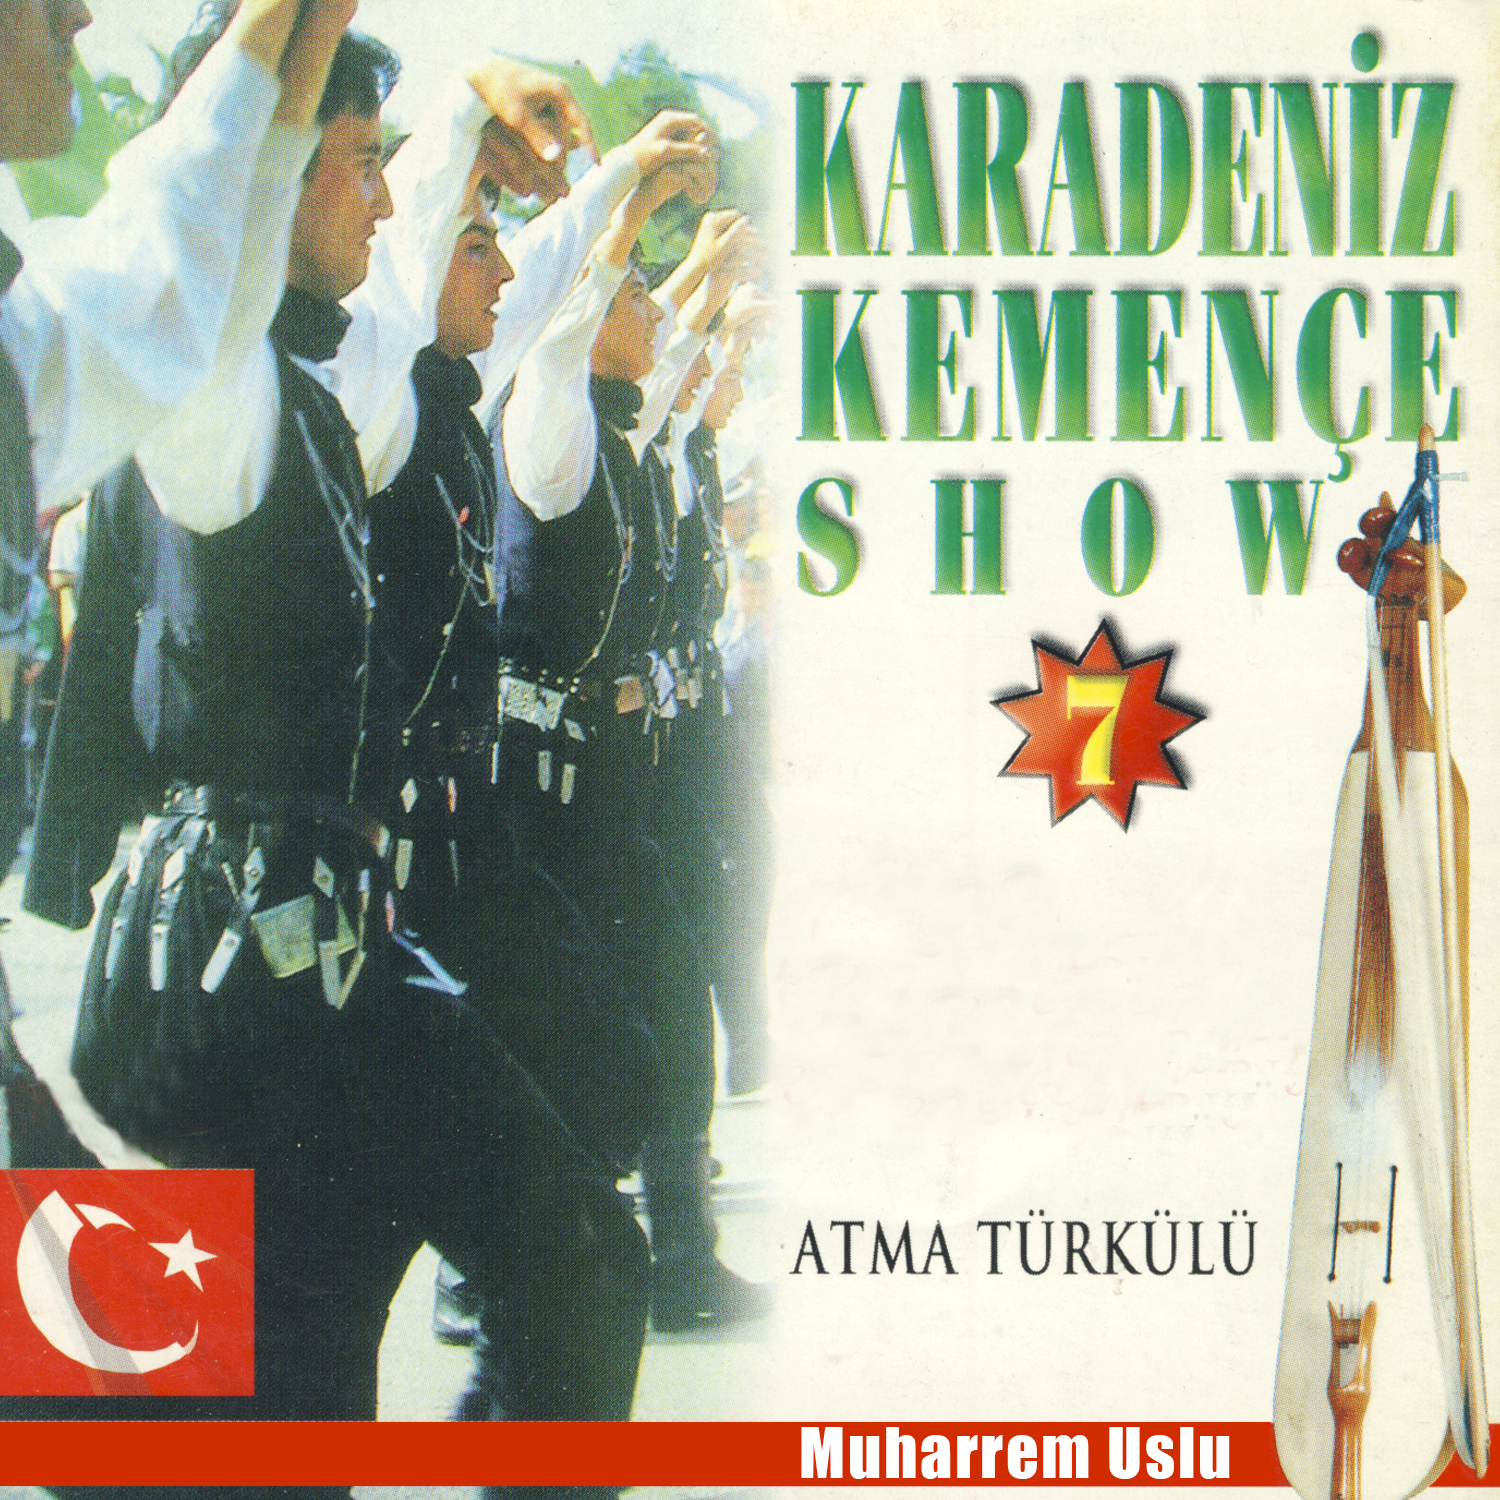 Karadeniz Kemen e Show, Vol. 7 Atma Tü rkü lü